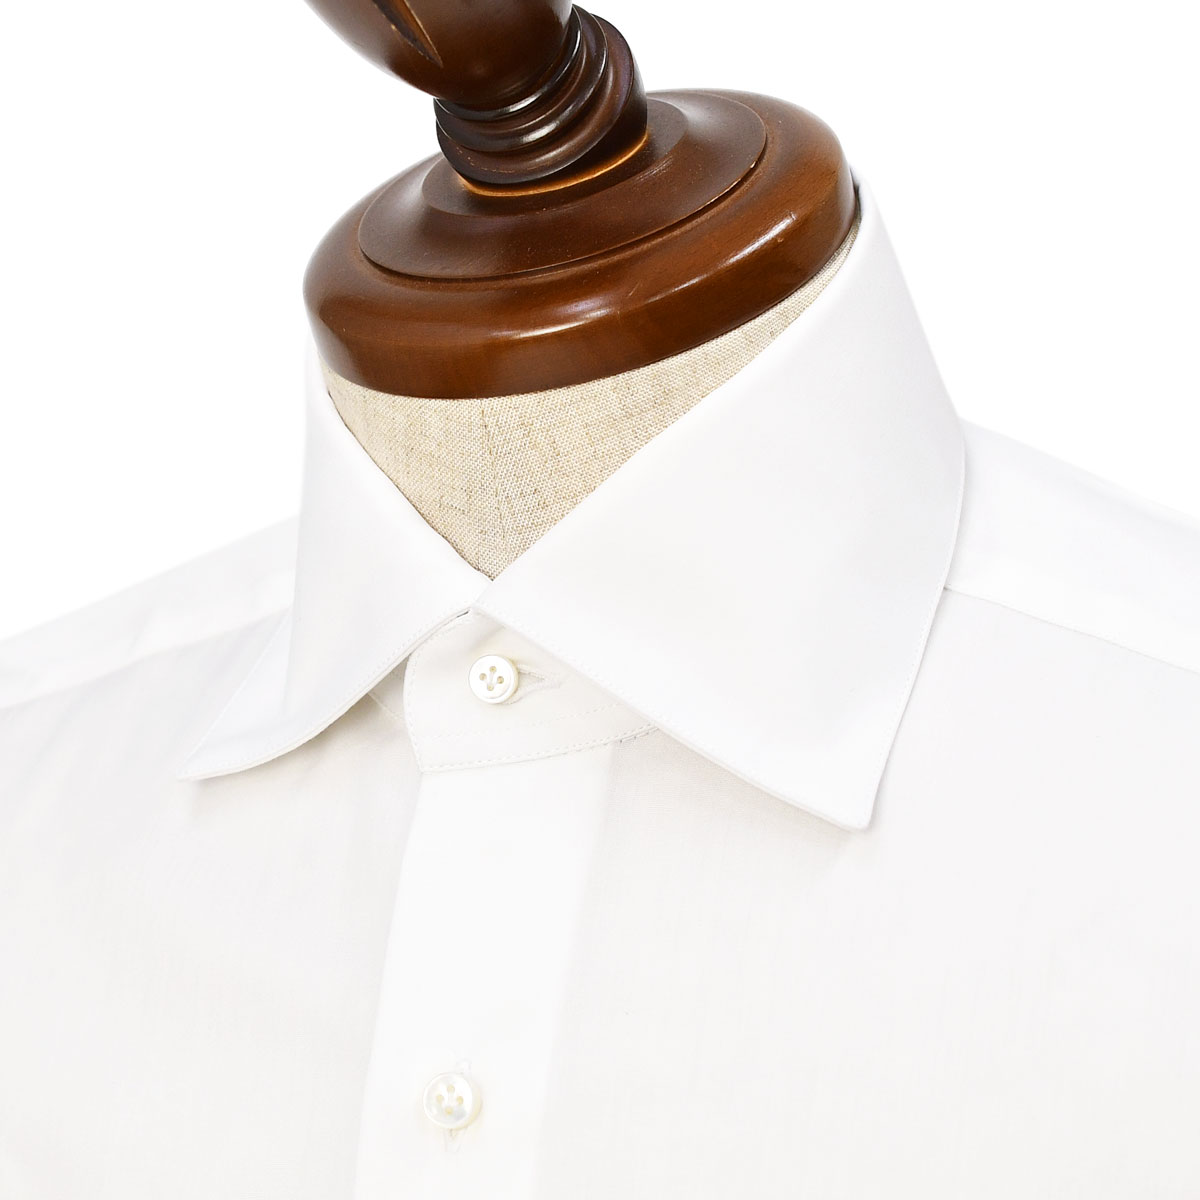 BARBA【バルバ】セミワイドカラーシャツ JOURNEY DENDY 5816U 0001 コットン ブロード ホワイト